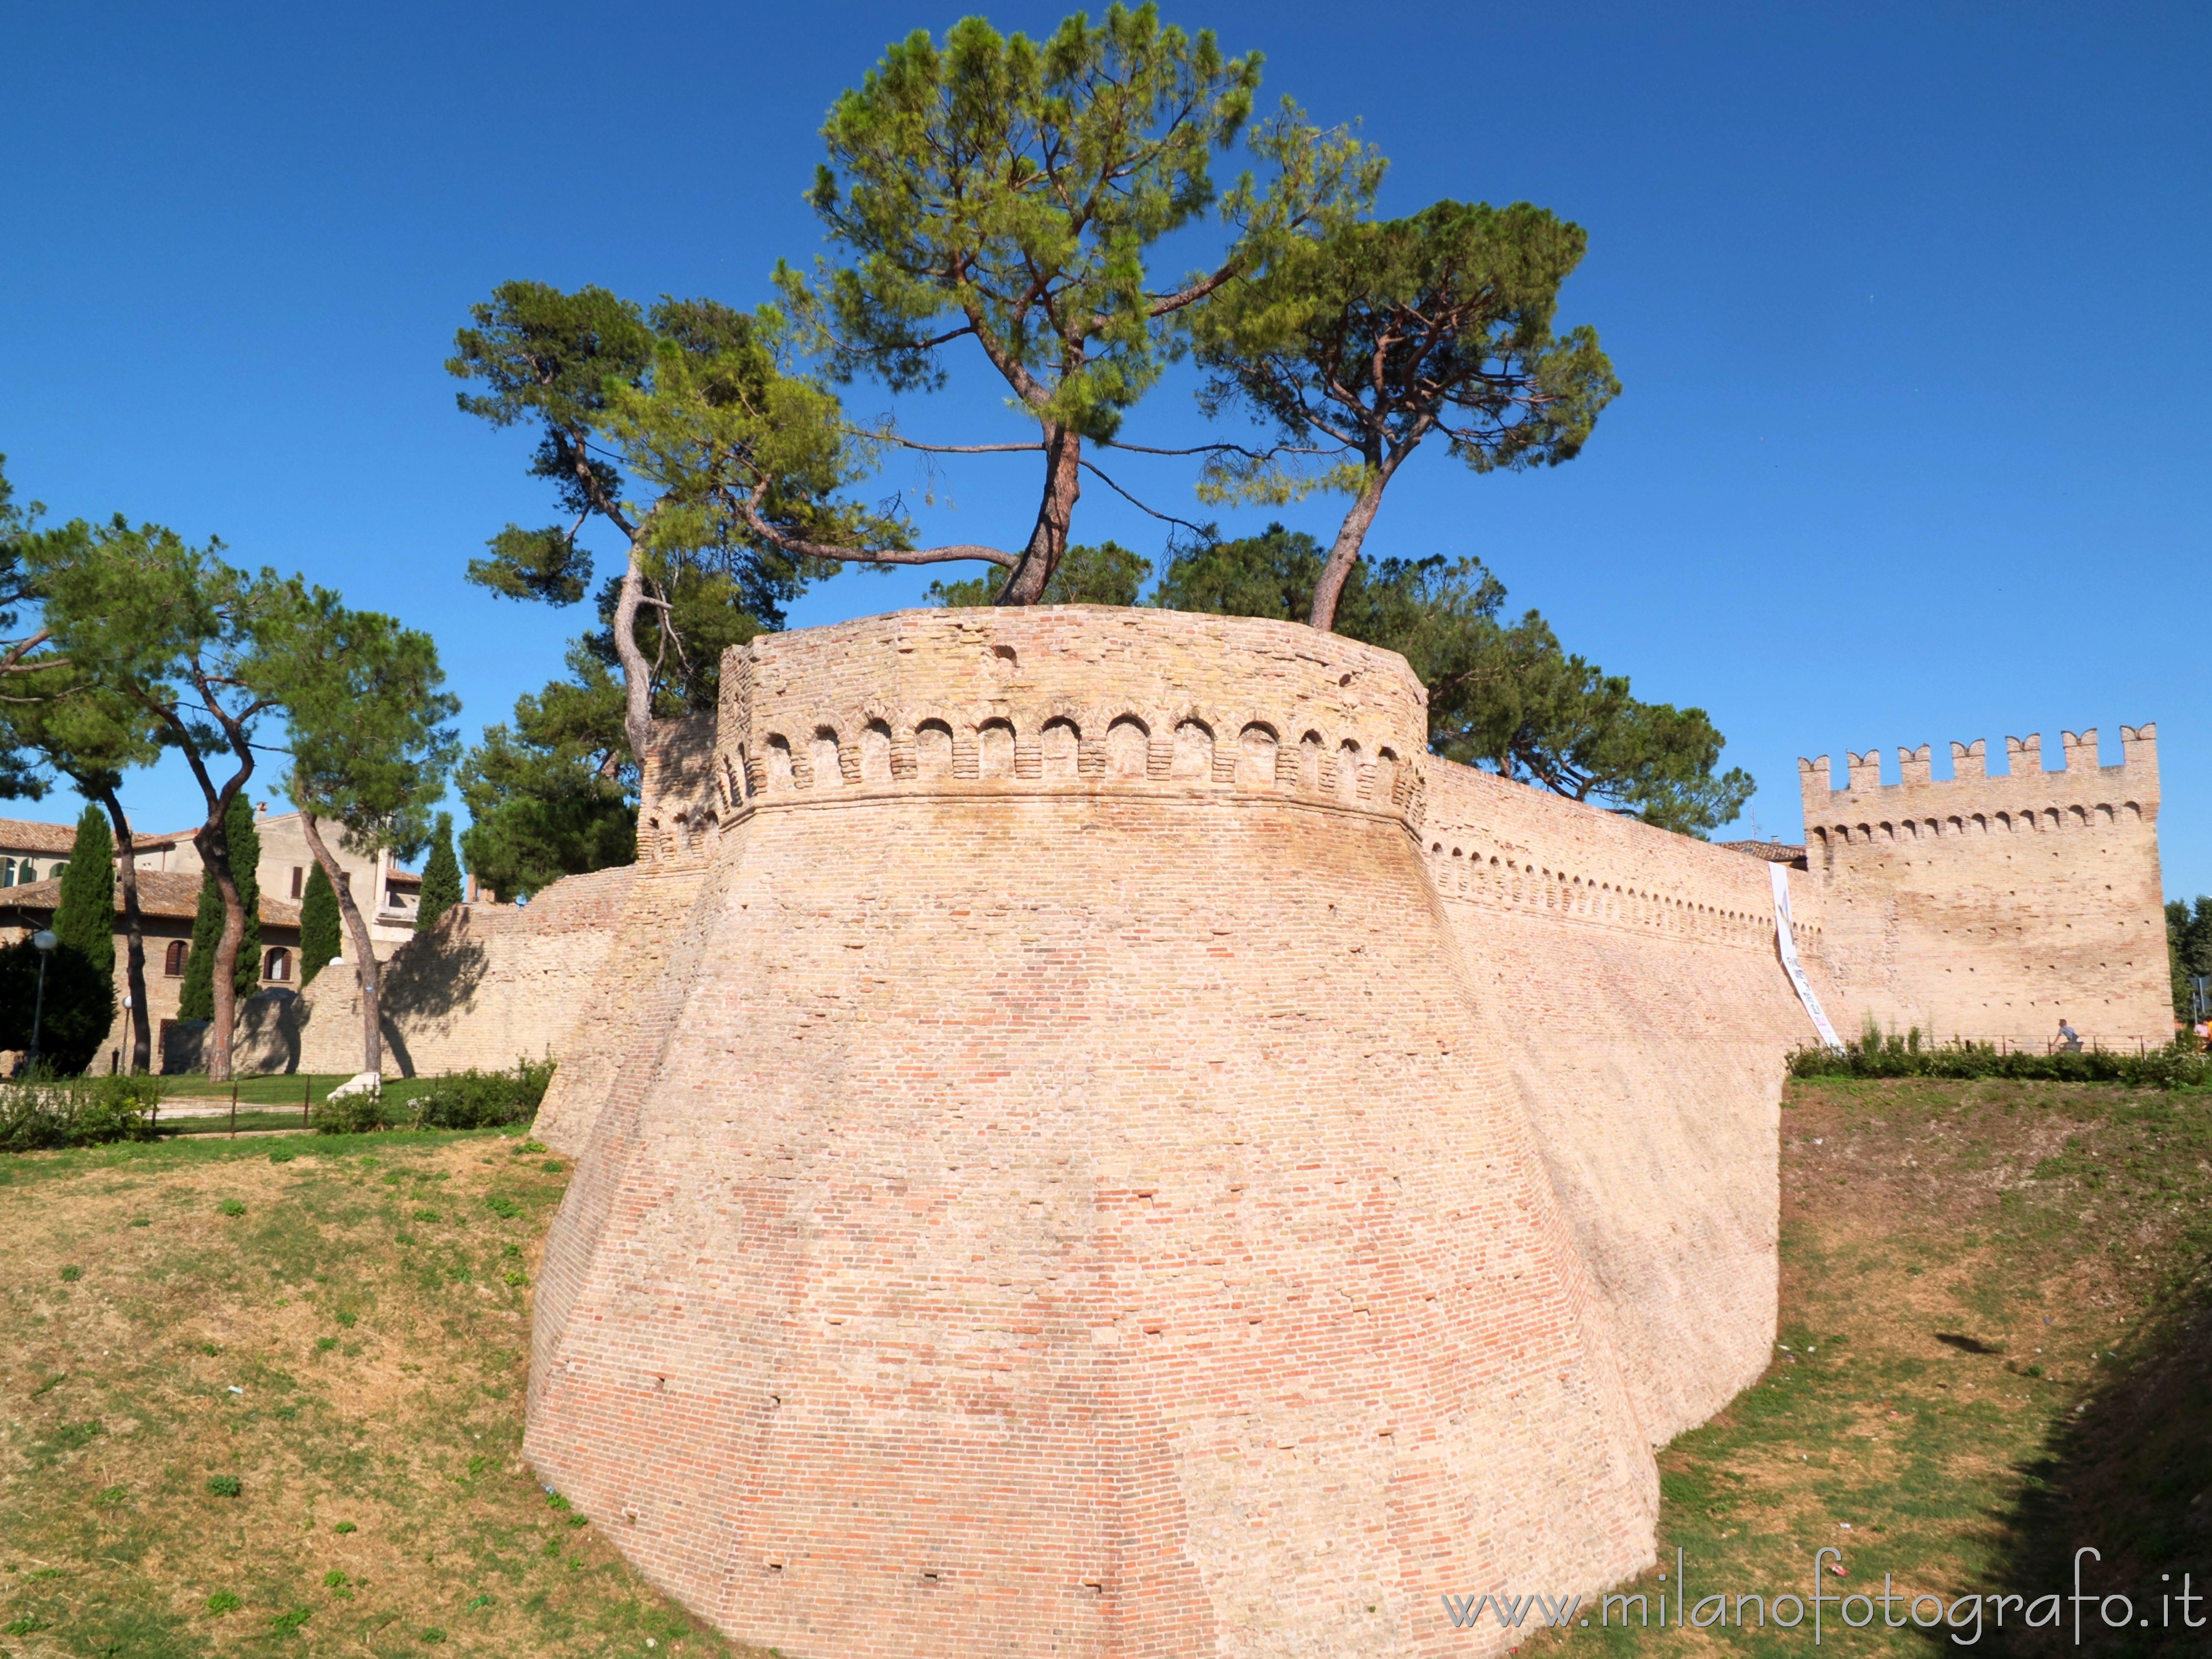 Fano (Pesaro e Urbino): Dettaglio delle mura cittadine - Fano (Pesaro e Urbino)